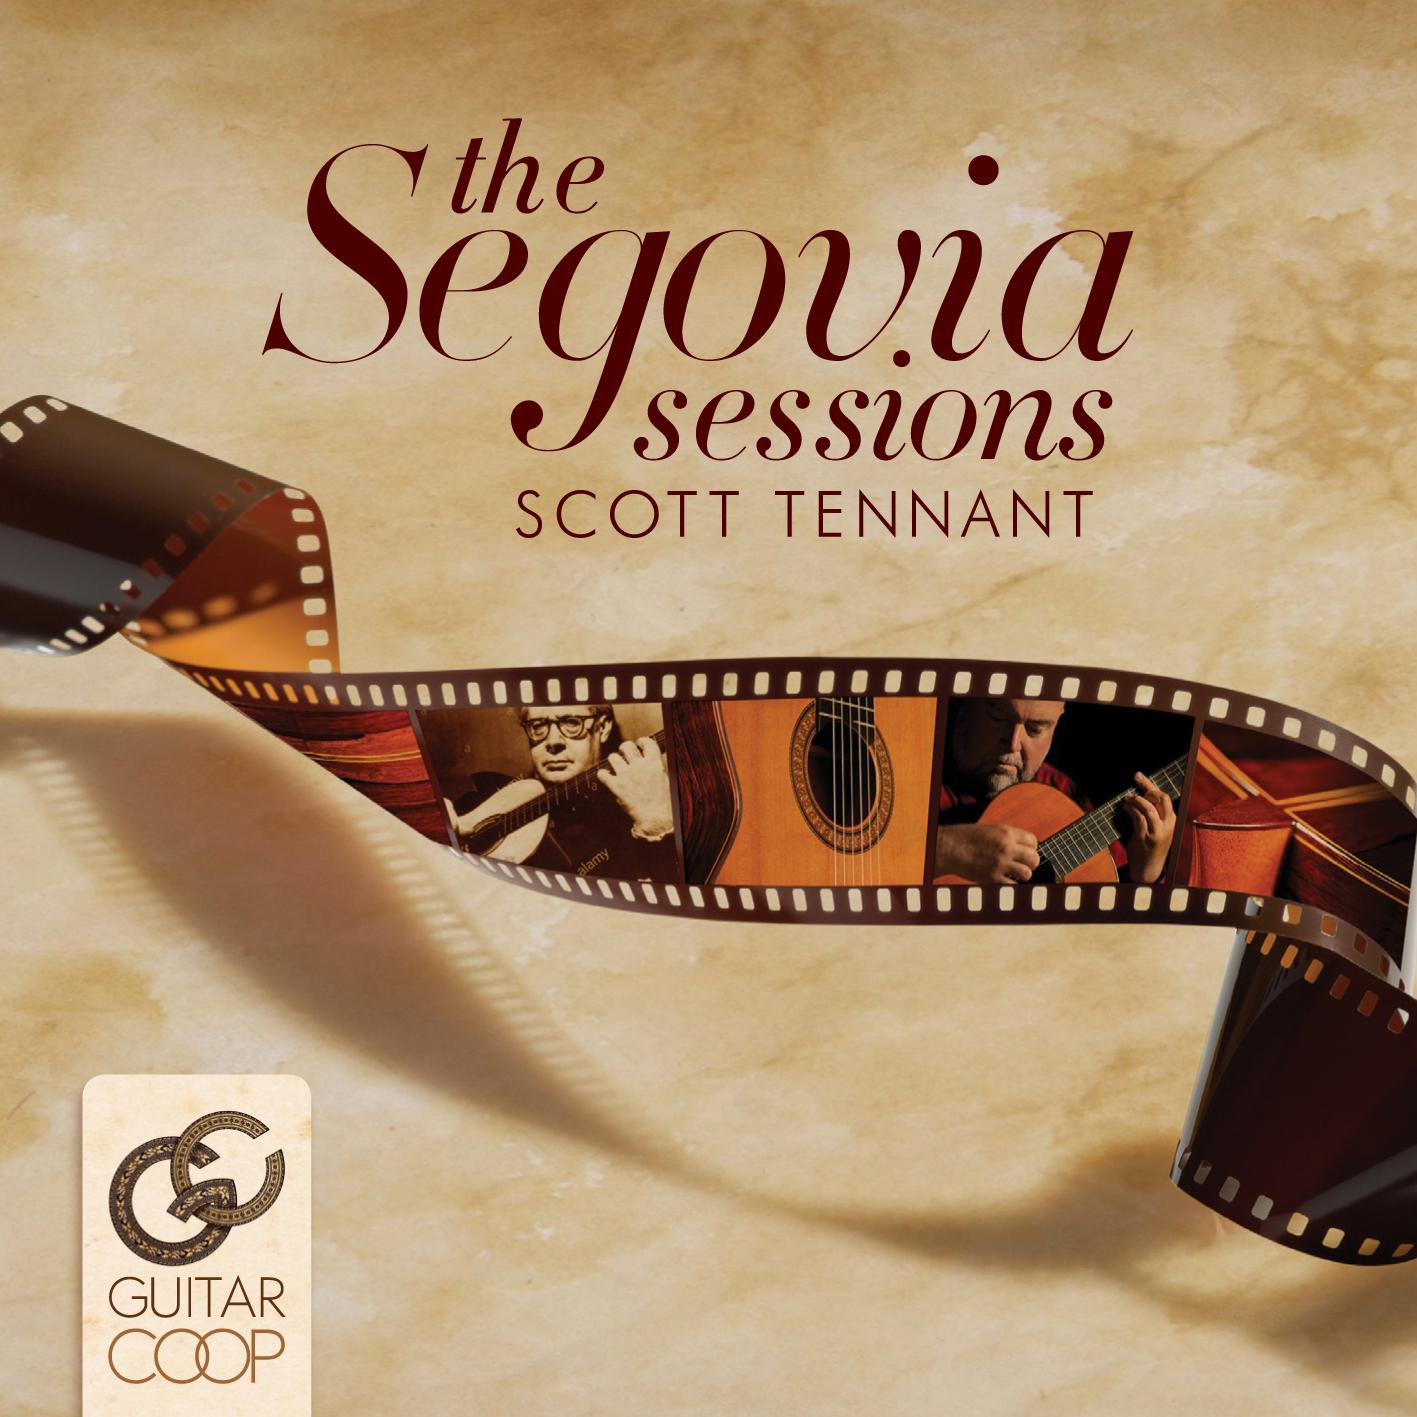 Scott Tennant - The Segovia Sessions